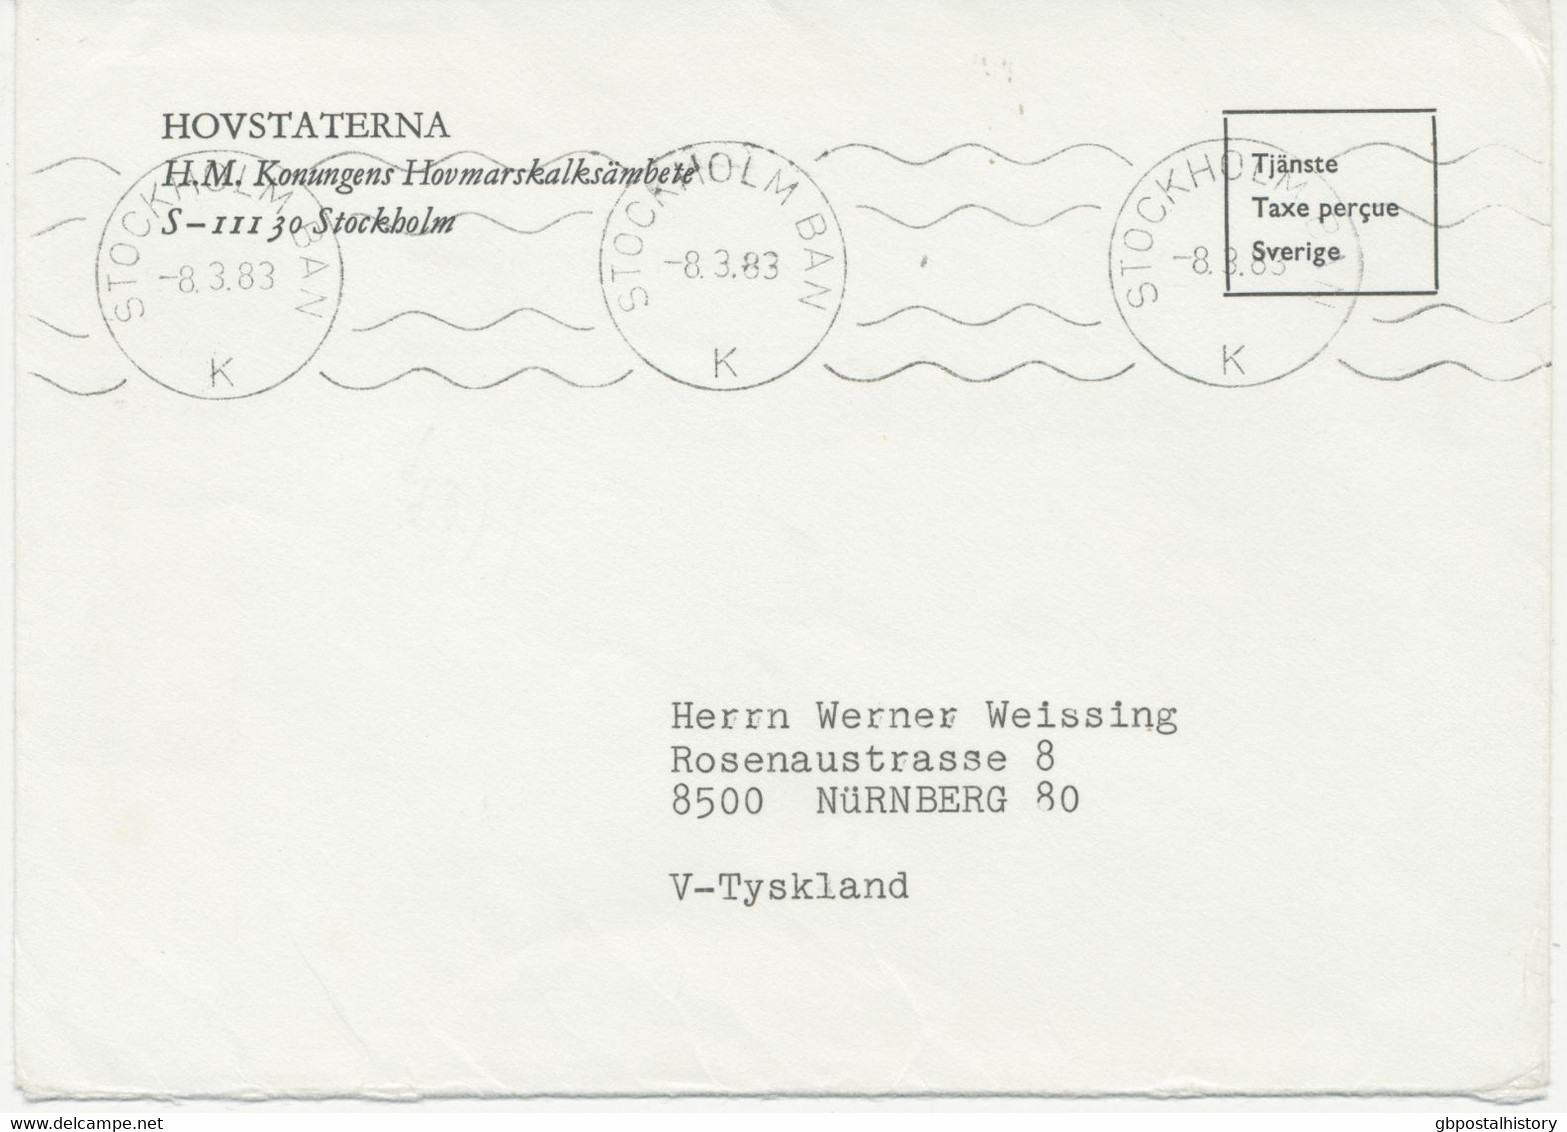 1983, Briefumschlag Des Königlichen Hauses, Schweden – Gebühr Bezahlt Mit Selt. Maschine-Stempel „STOCKHOLM BAN / K“ - Servizio